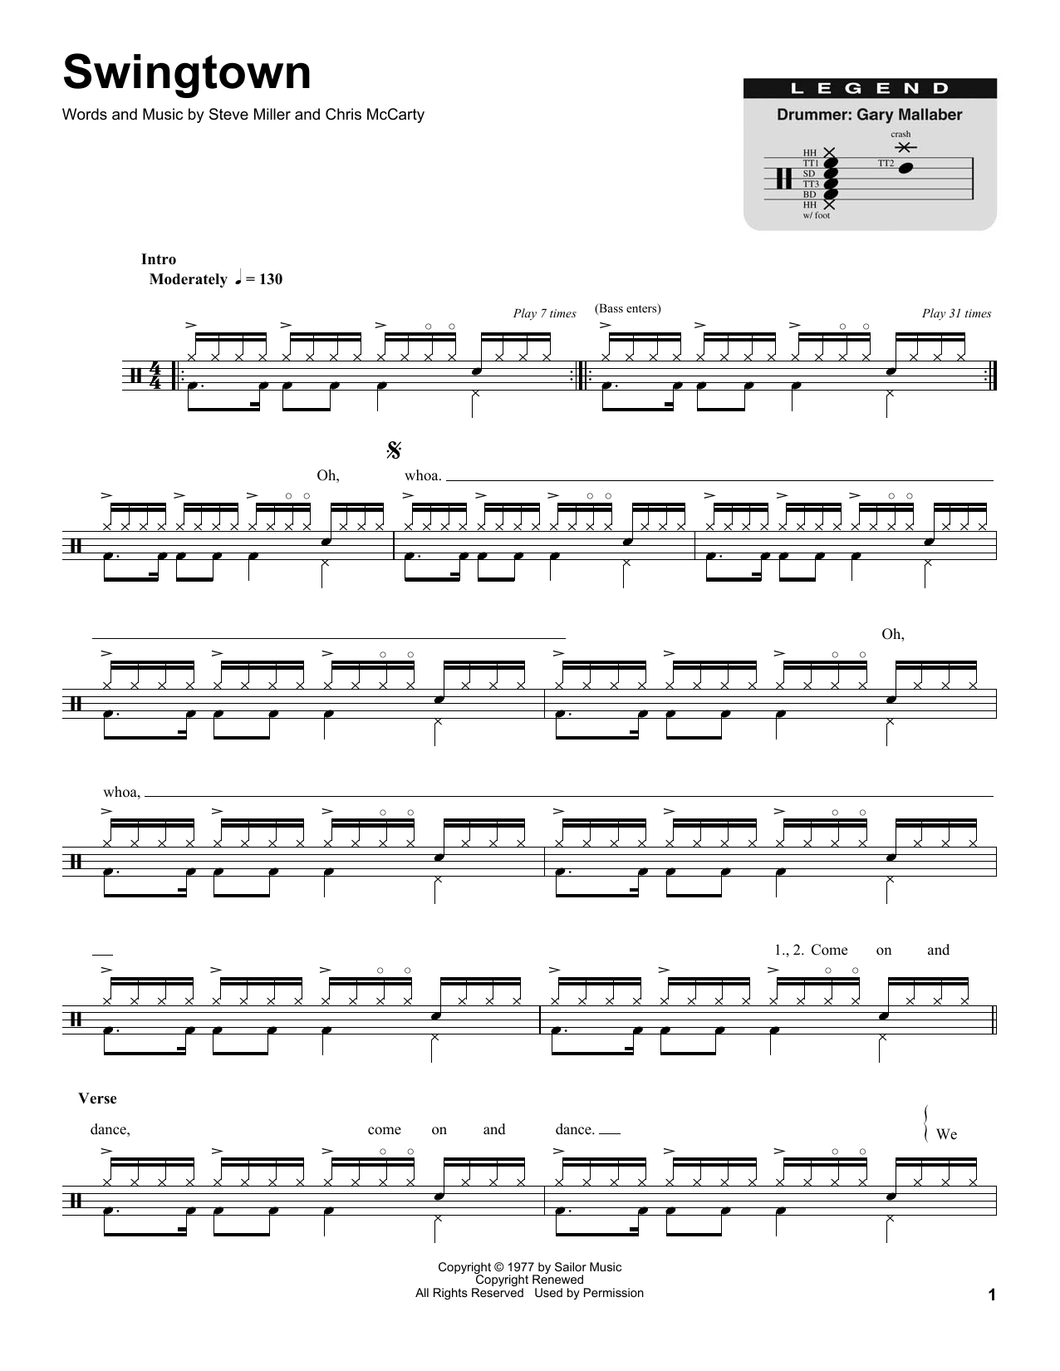 Swingtown - Steve Miller Band - Full Drum Transcription / Drum Sheet Music - SheetMusicDirect DT